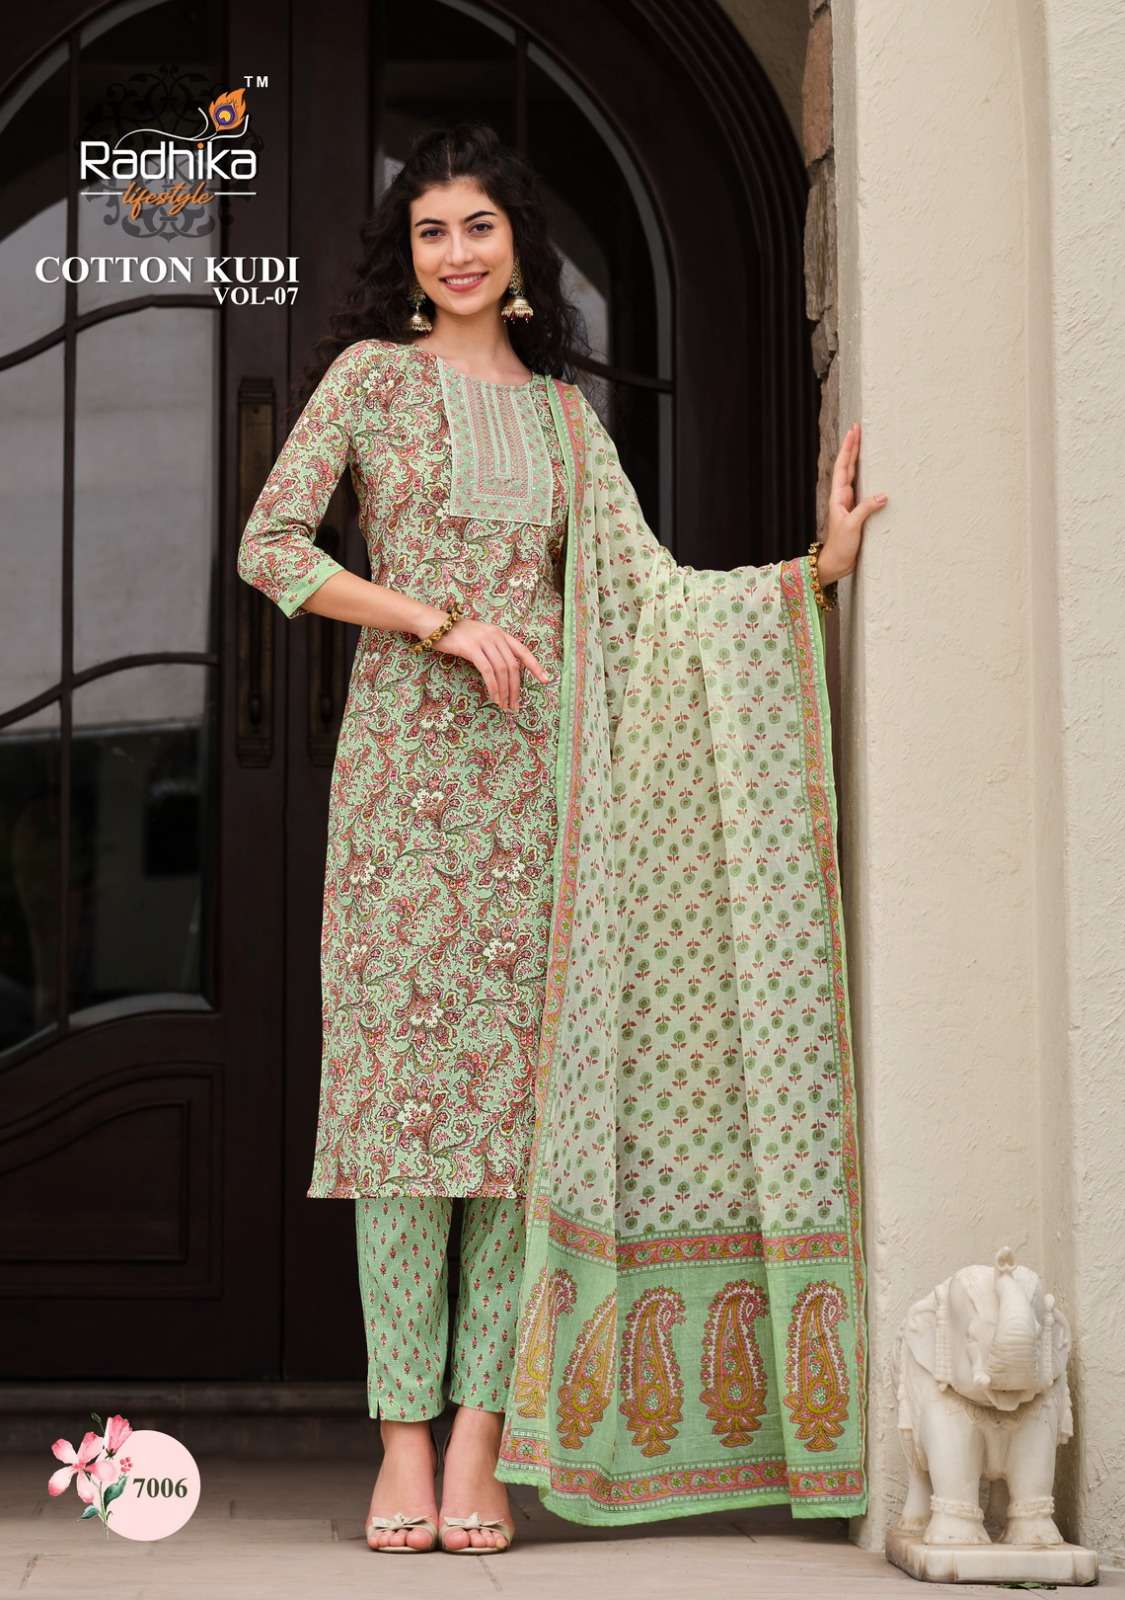 radhika lifestyle cotton kudi vol-7 7001-7008 series trendy look designer kurtis catalogue manufacturer surat